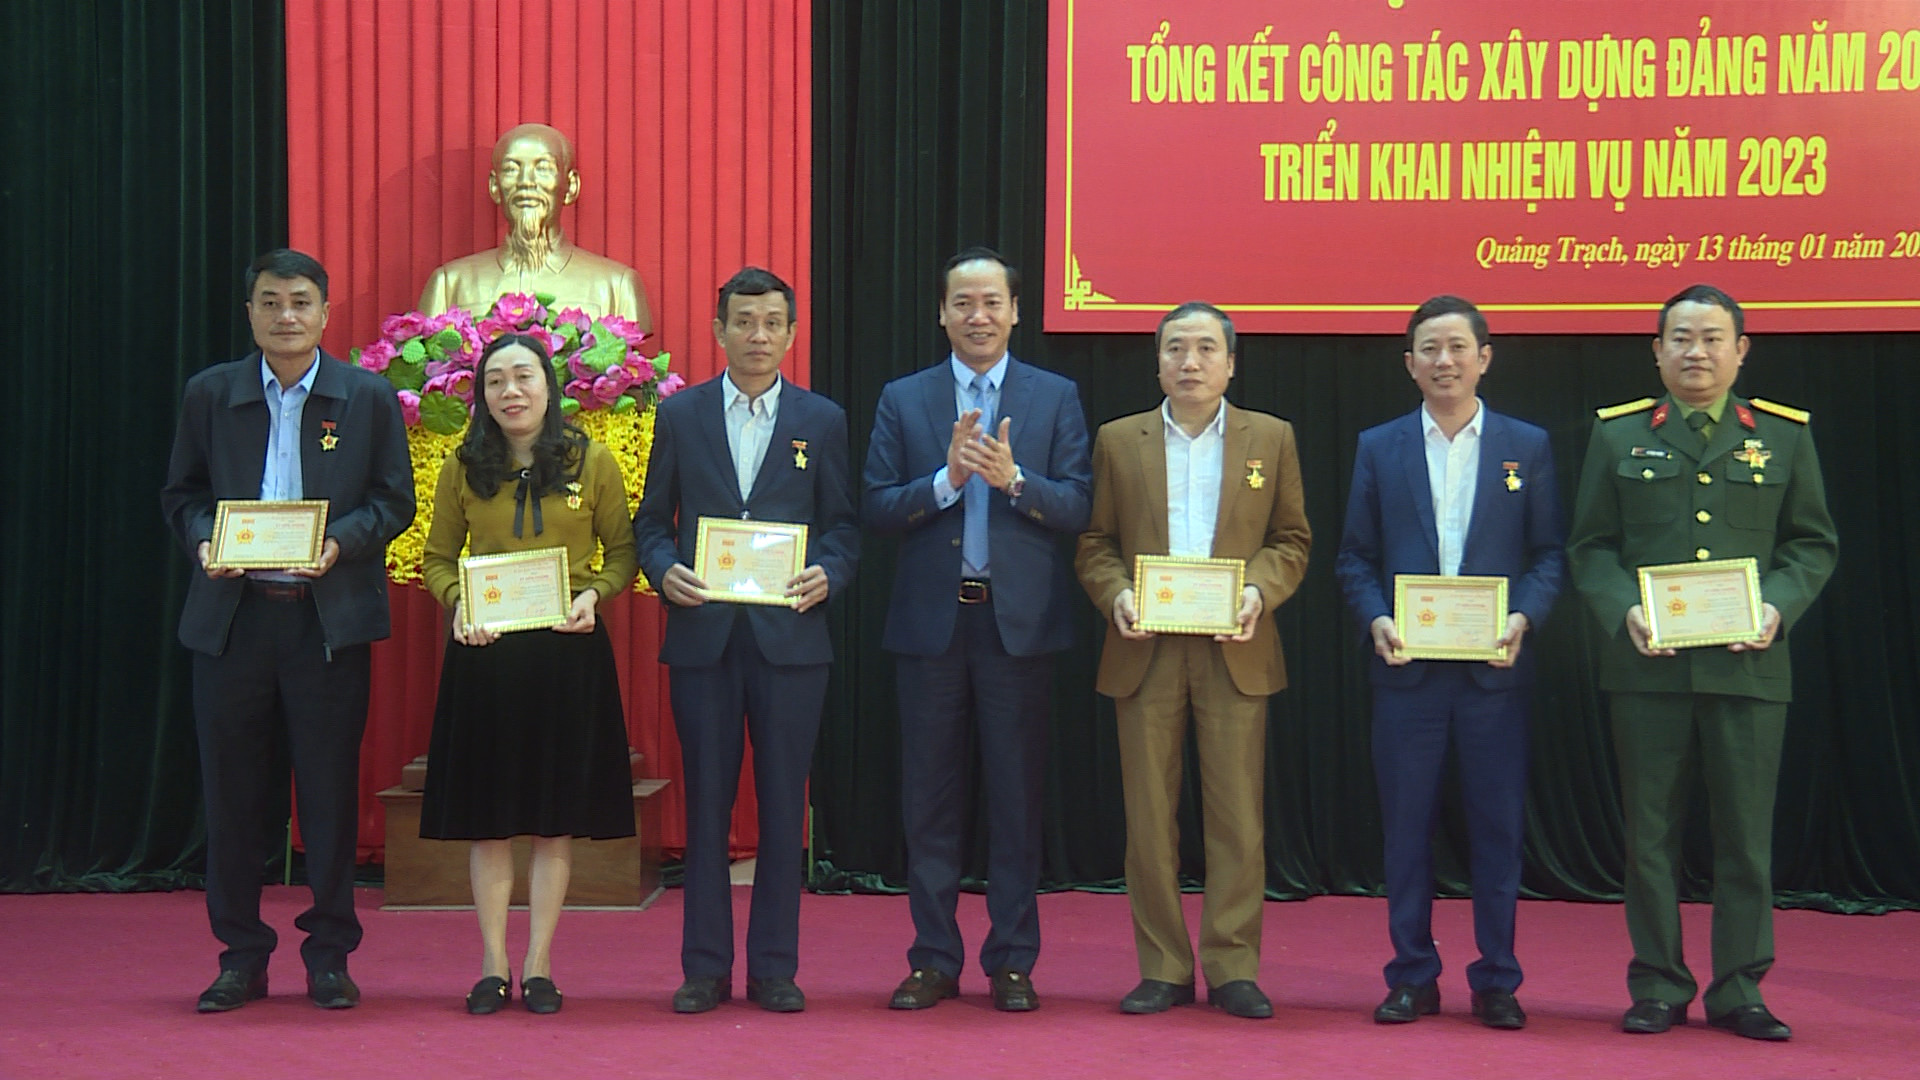 Đồng chí Nguyễn Xuân Đạt, Tỉnh ủy viên, Bí thư Huyện ủy Quảng Trạch trao kỷ niệm chương của Ủy ban kiểm tra Trung ương Trung ương cho các cá nhân.